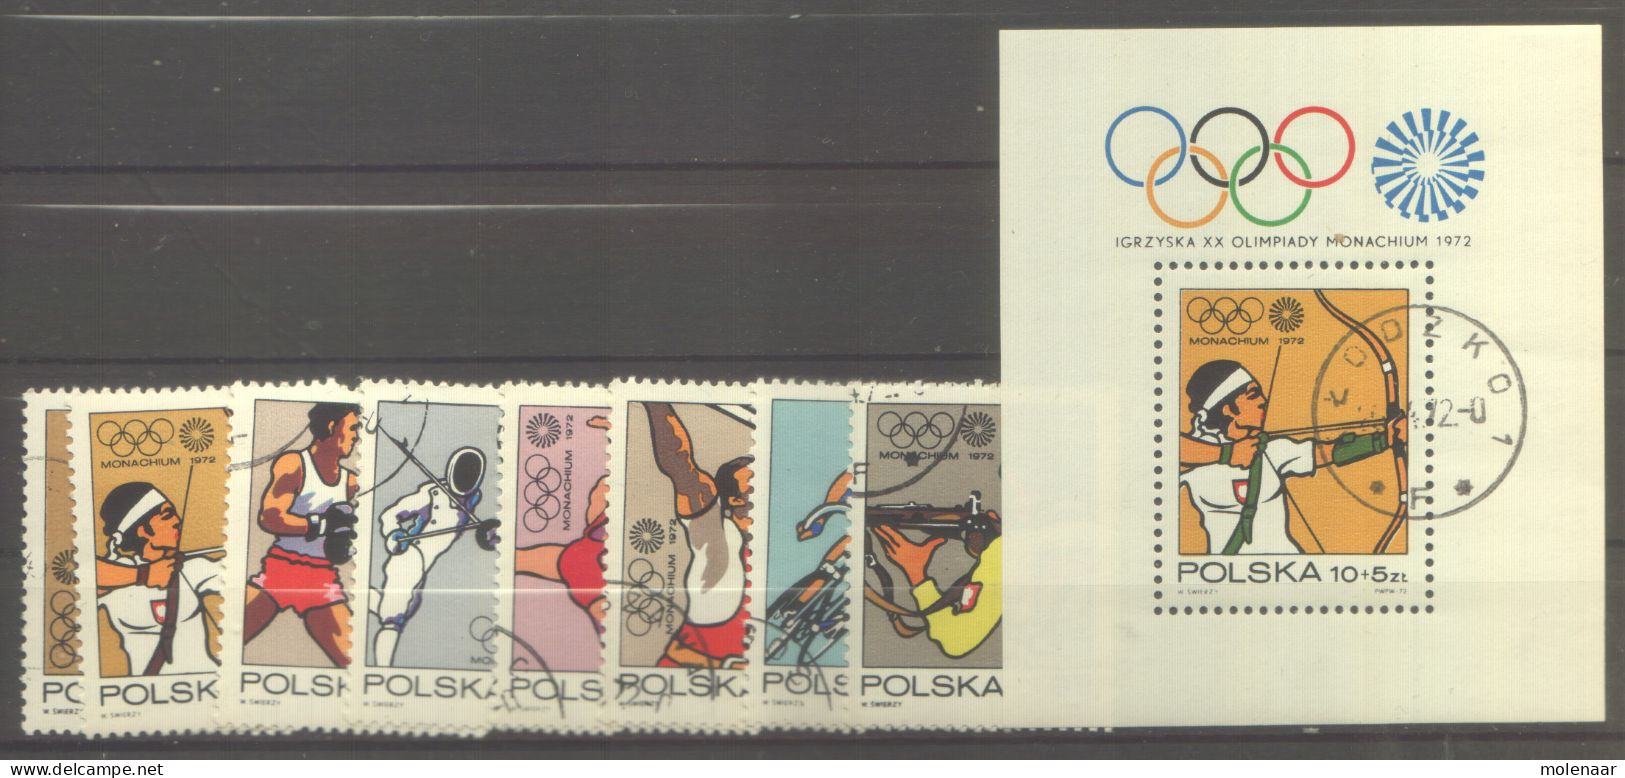 Postzegels > Europa > Polen > 1944-.... Republiek > 1971-80 > Gebruikt  2146-2154 (12065) - Oblitérés